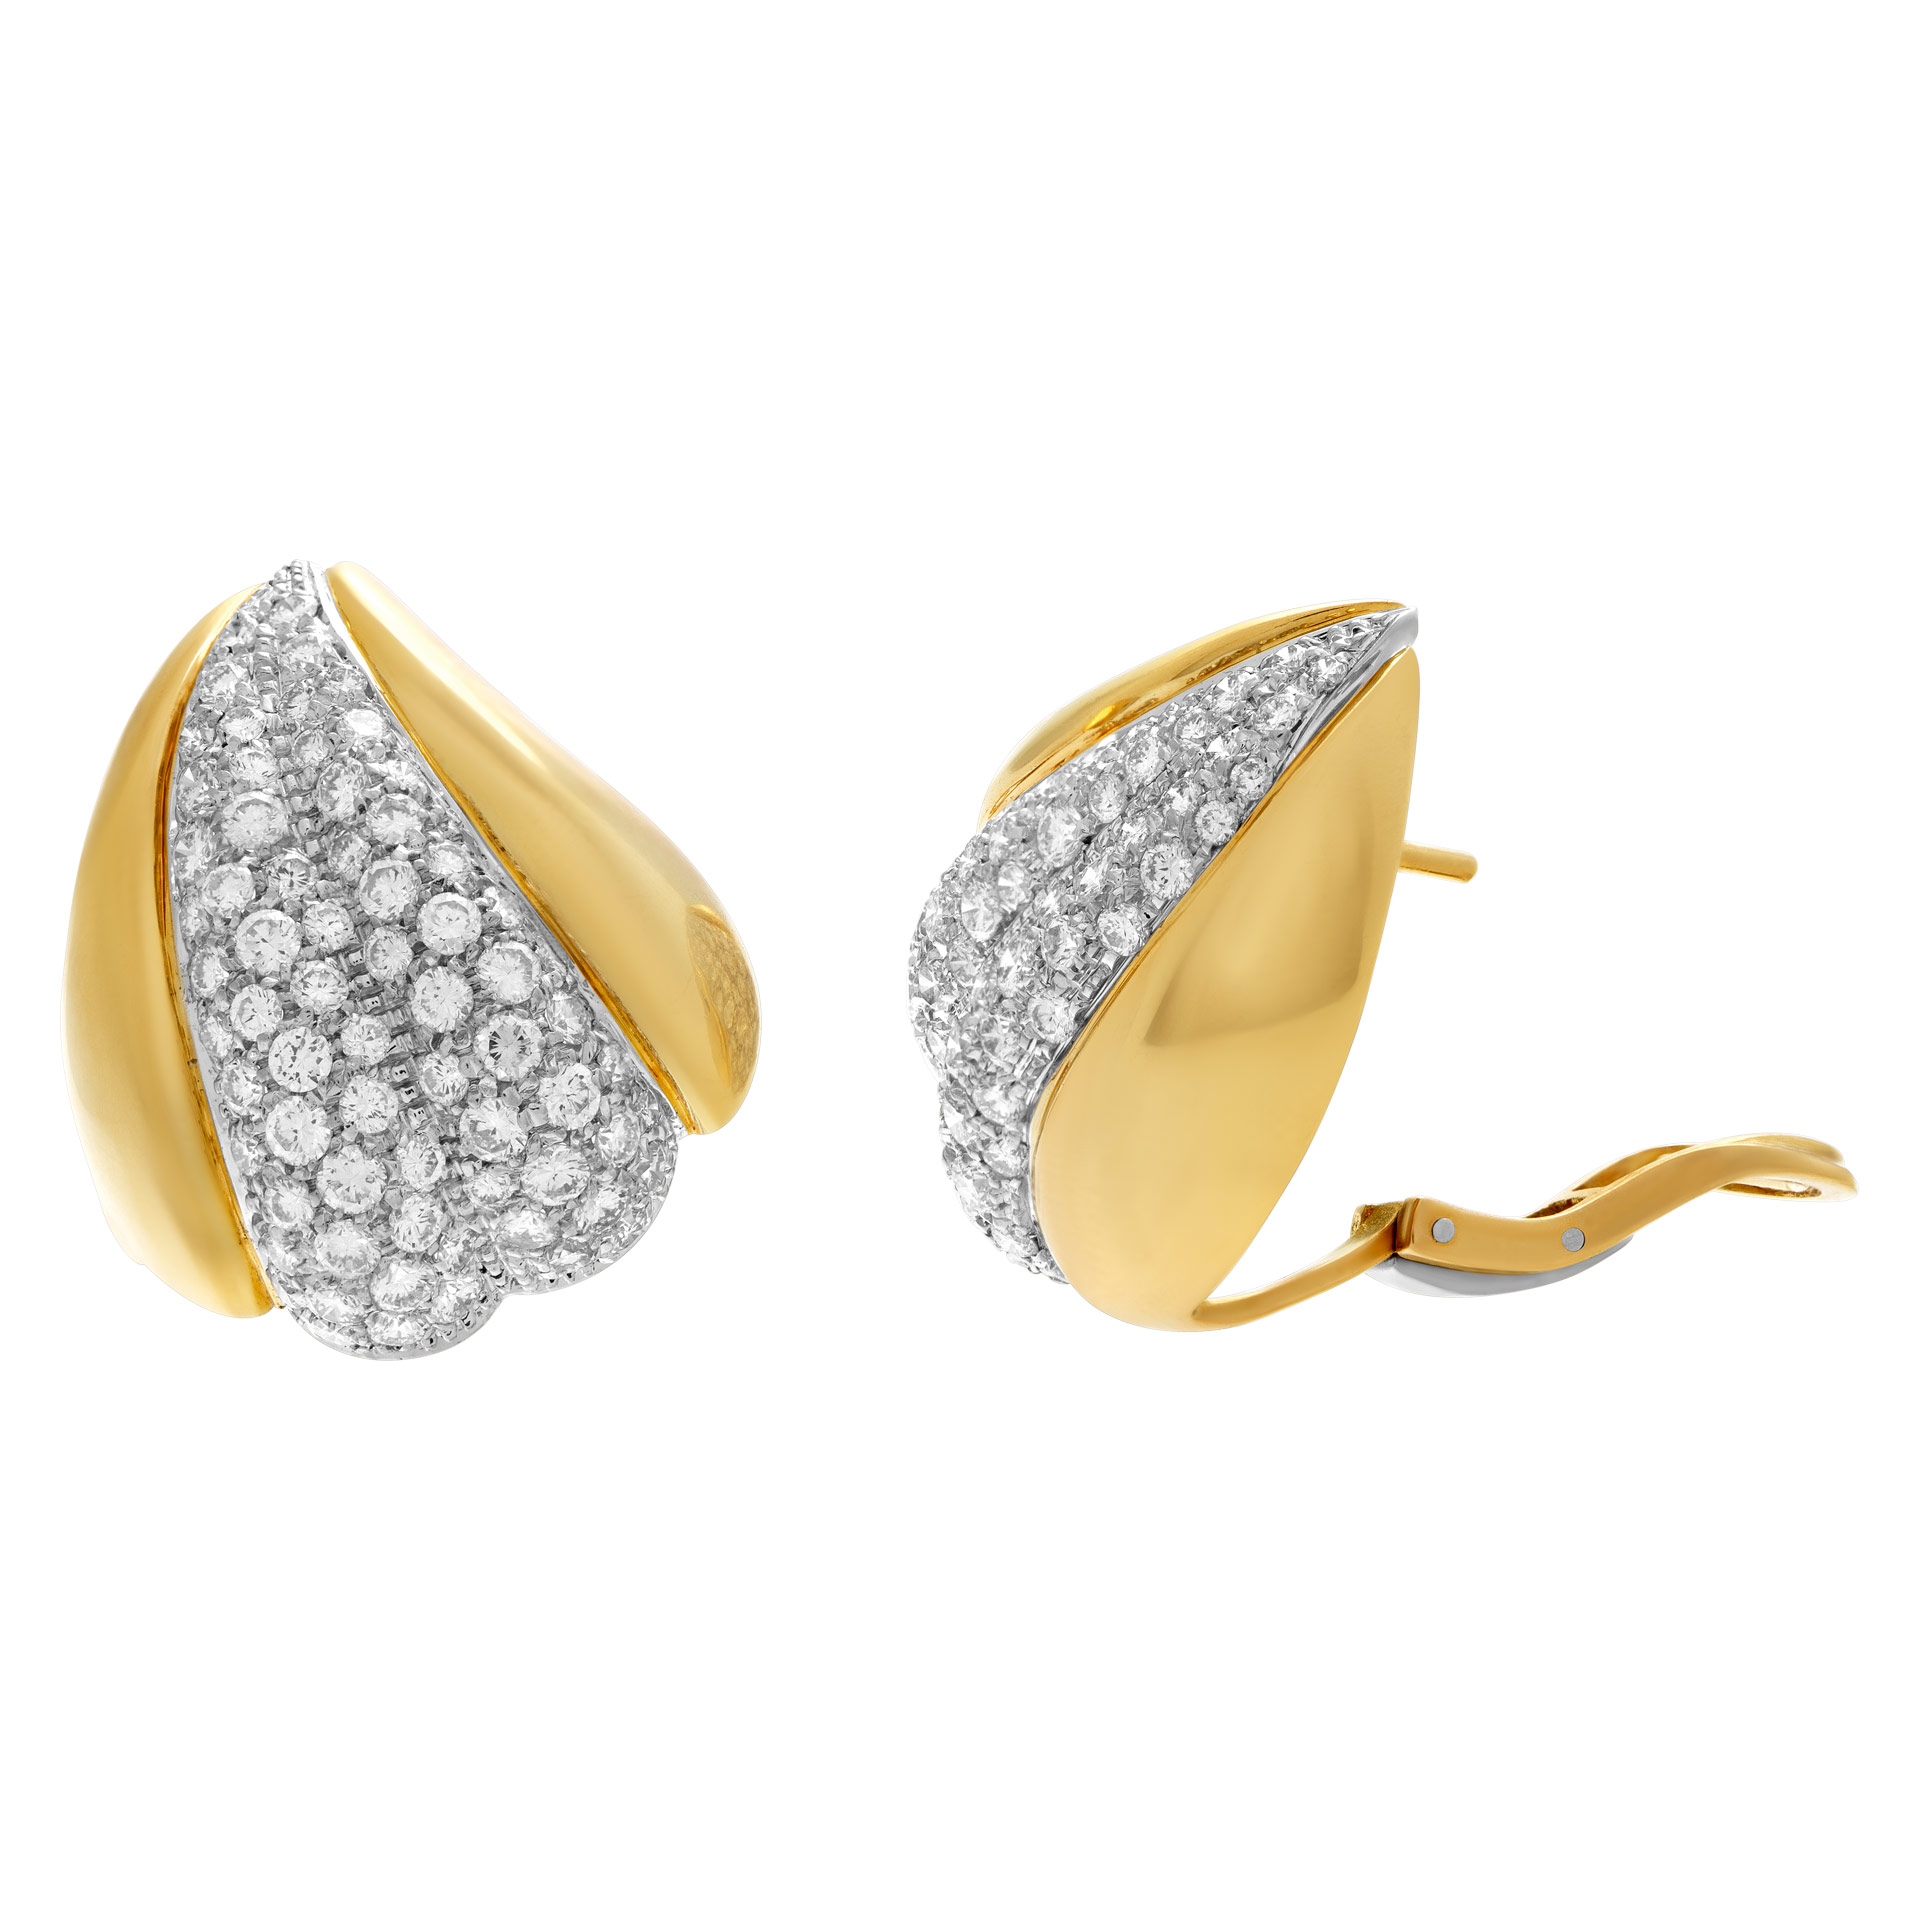 DAMIANI diamonds earrings 18k yellow gold (Stones) image 2